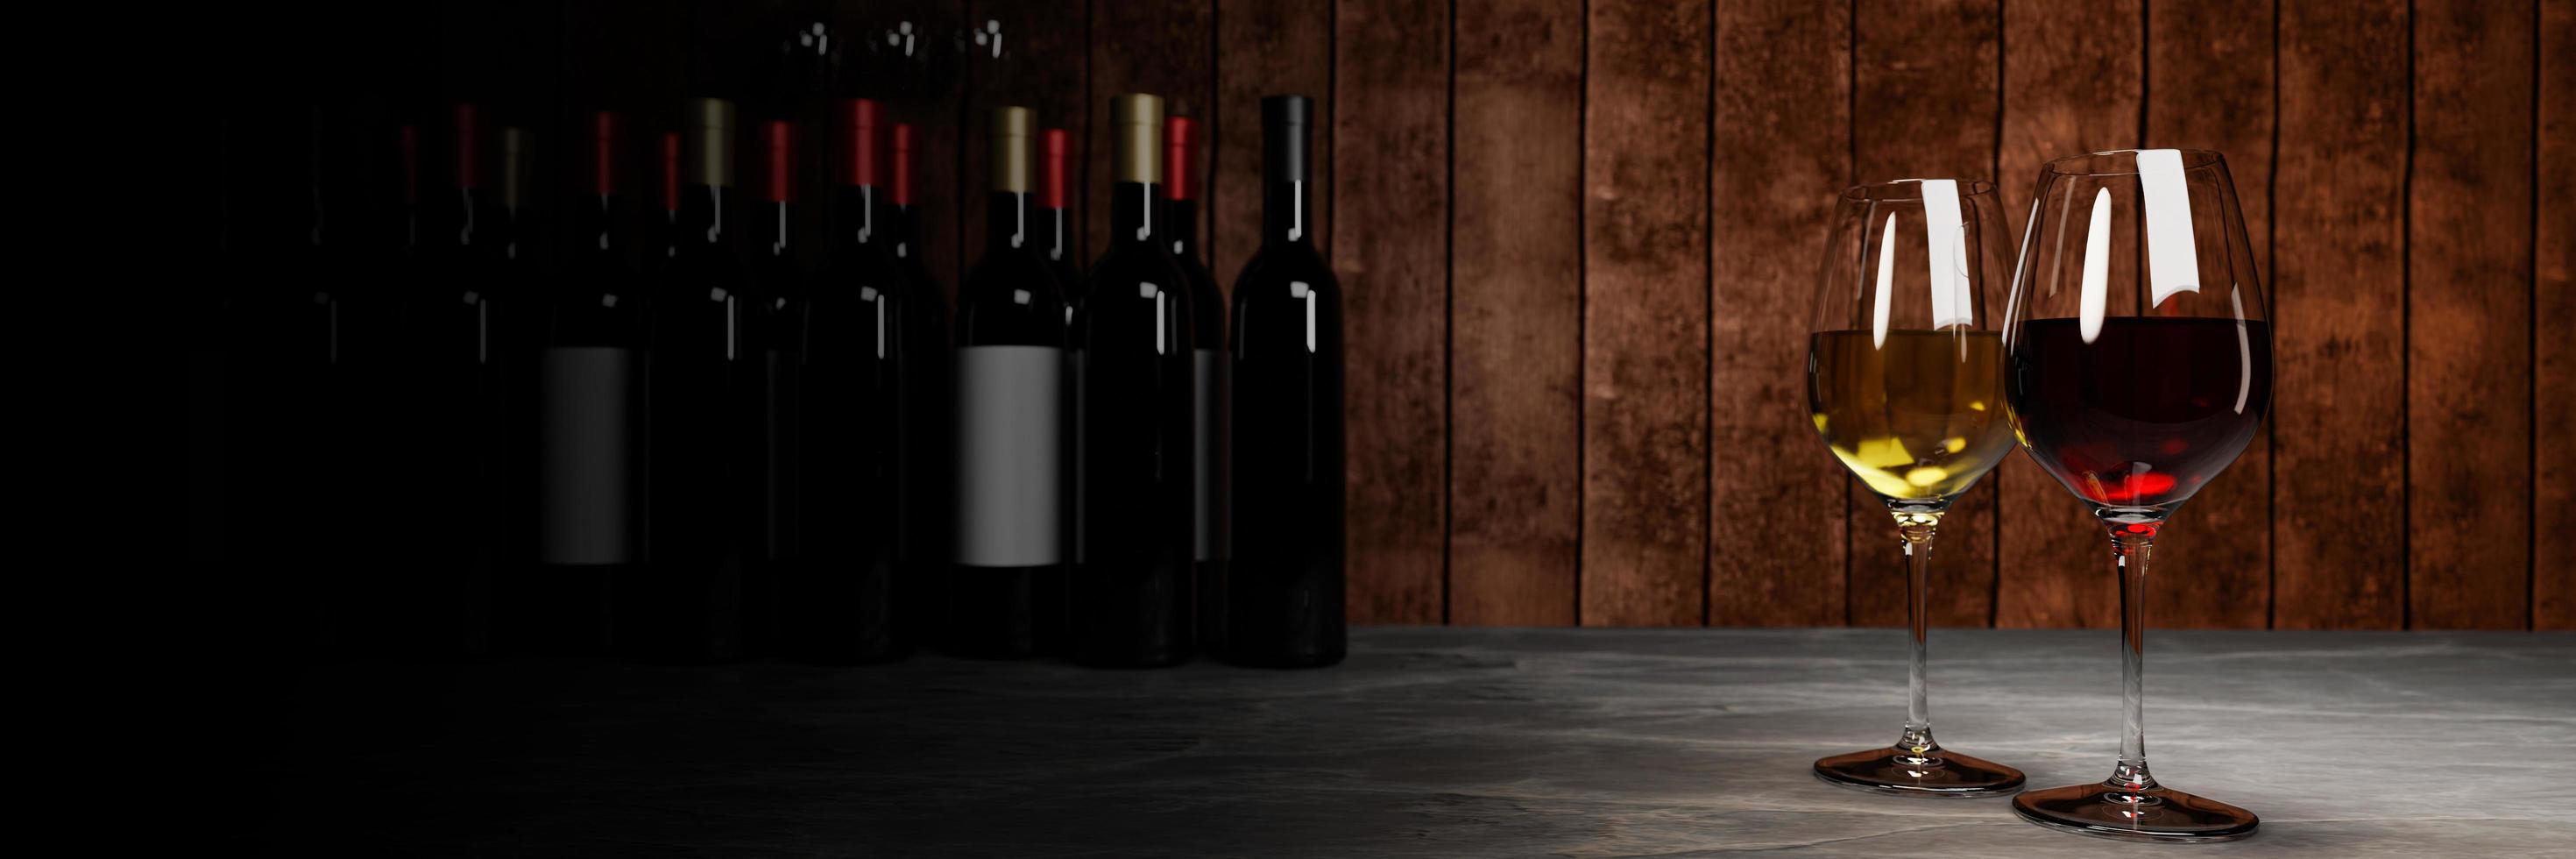 rött och vitt vin i klart glas, många suddiga vinflaskors bakgrunder placerar det på ett cementgolv med en träskivavägg. källaren provsmakning produktionskoncept.3D-rendering foto